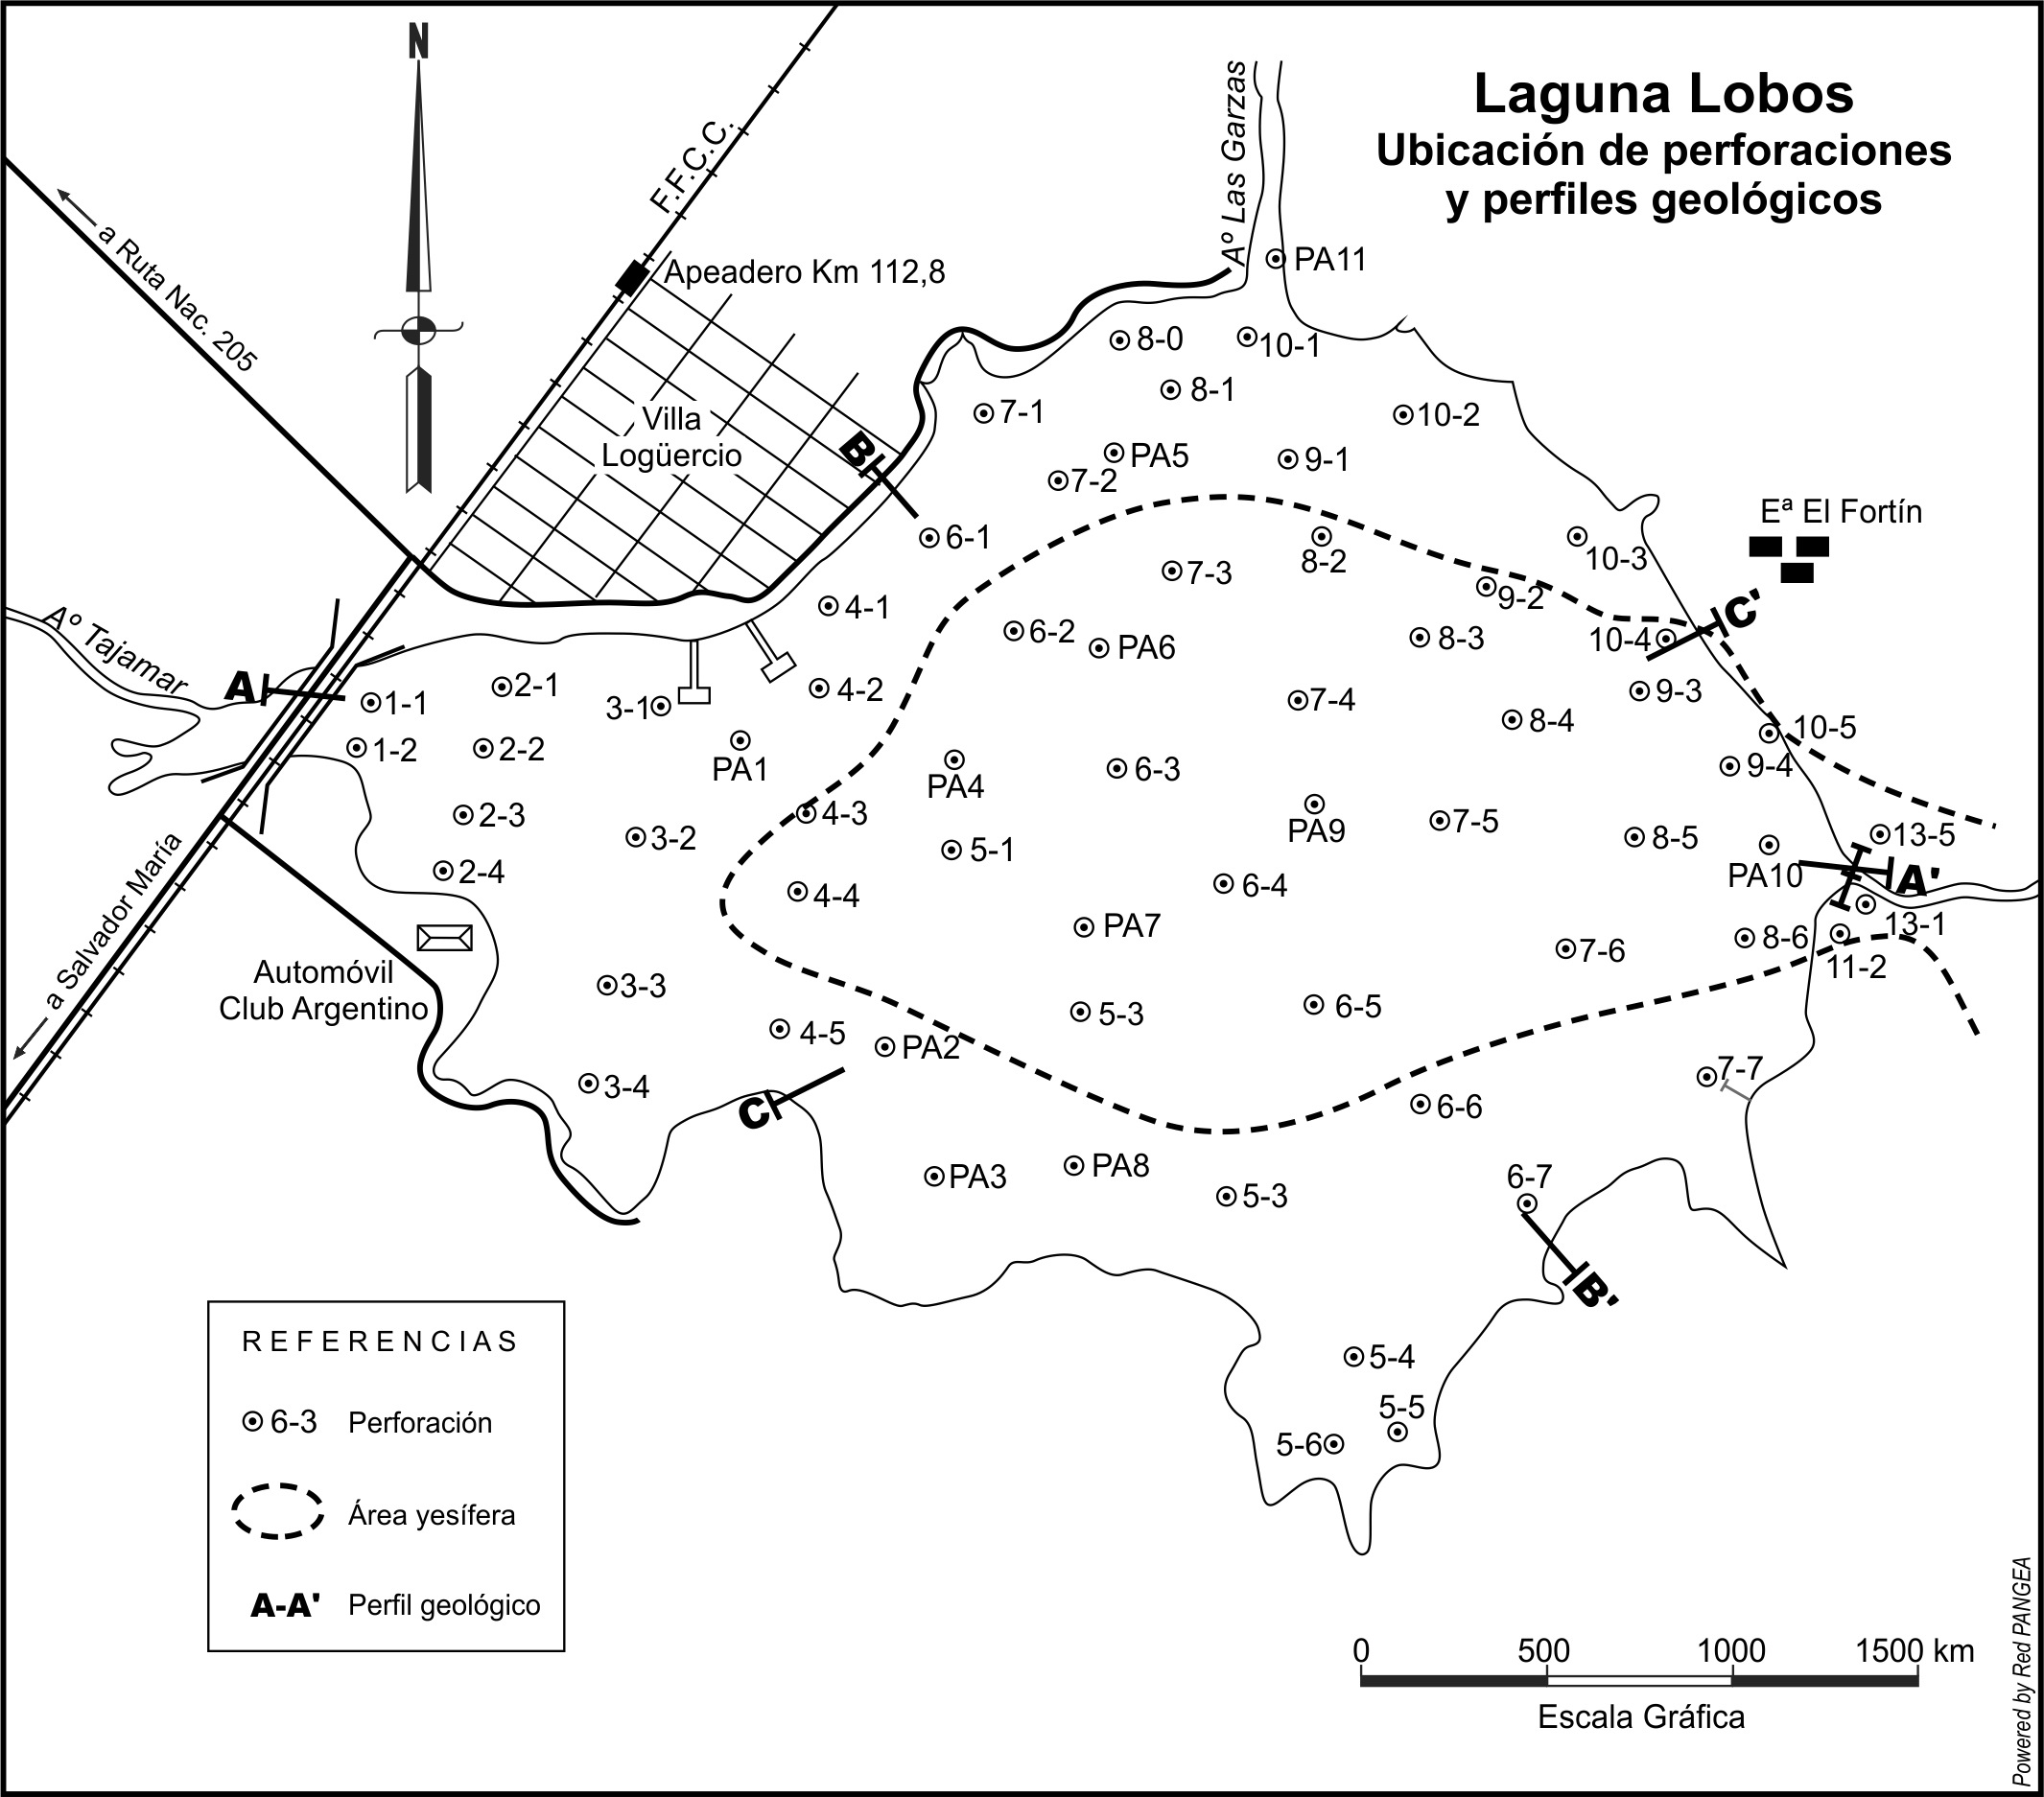 Mapa
de ubicación de perforaciones y perfiles geológicos de la laguna Lobos.